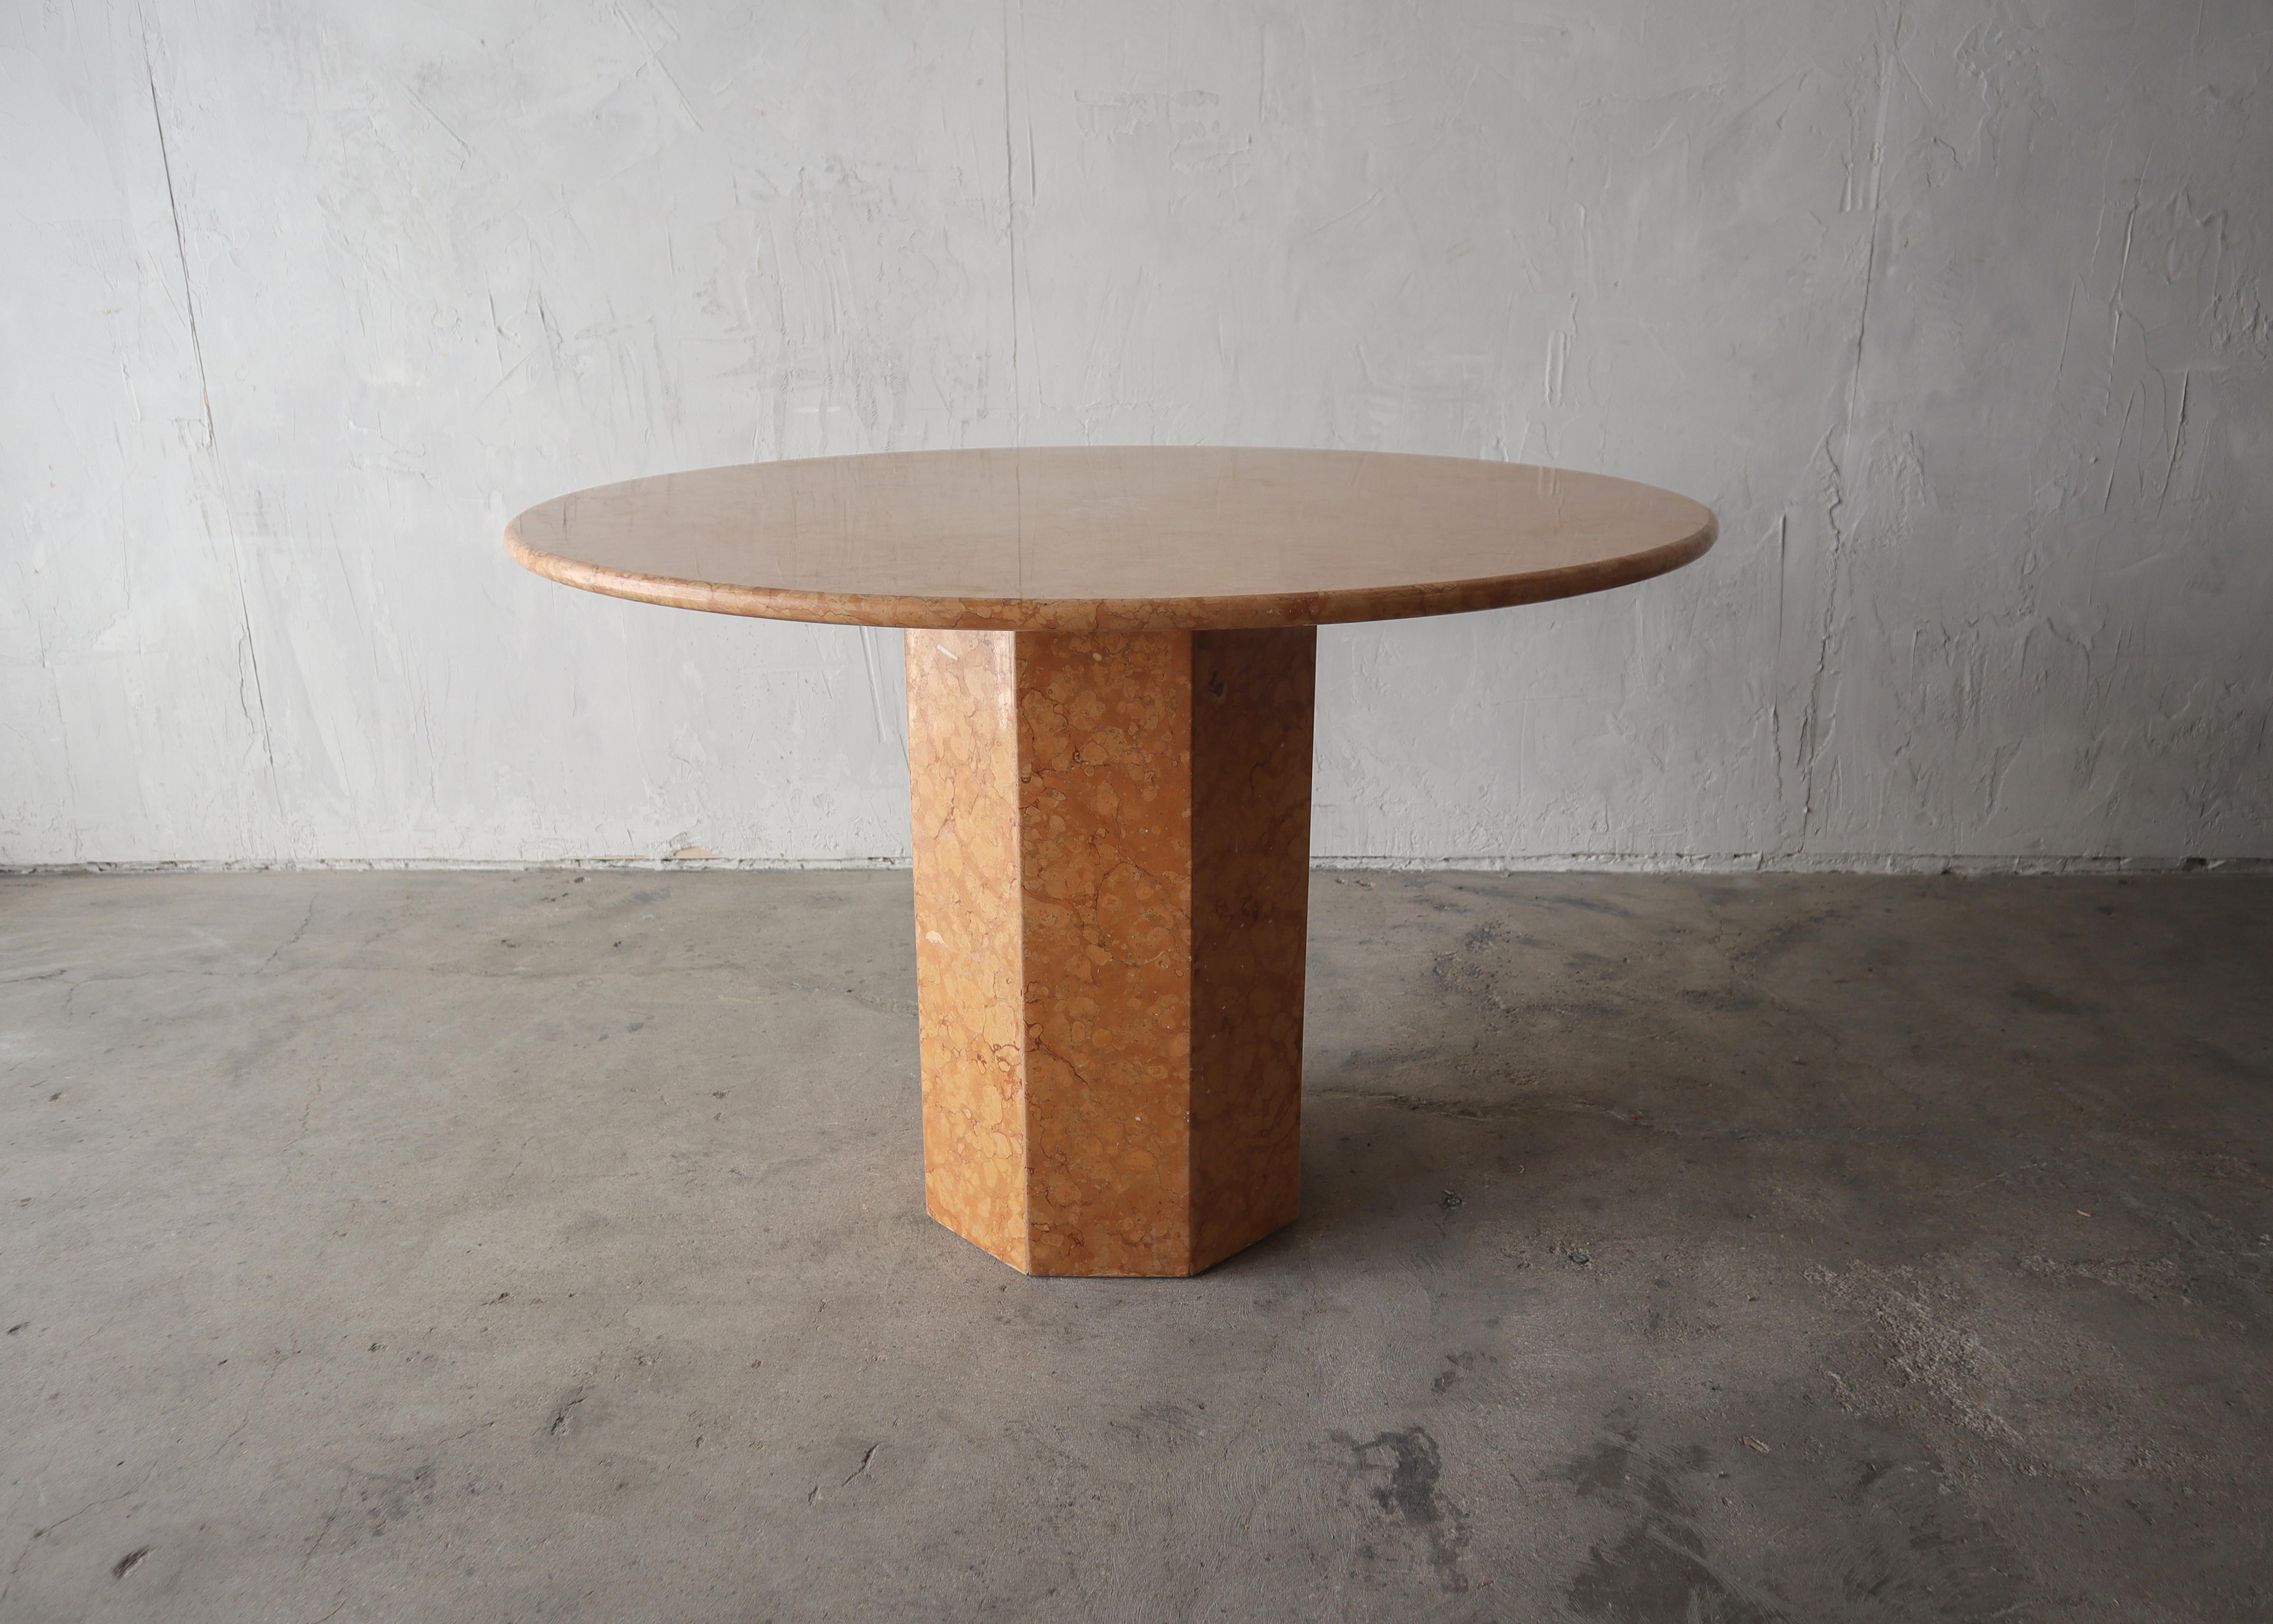 Impresionante mesa de comedor postmoderna de mármol Rojo Alicante.
Esta mesa tiene un tamaño ideal para espacios reducidos, lo suficientemente grande como para sentar a 4 personas, pero lo suficientemente pequeña como para que tampoco resulte